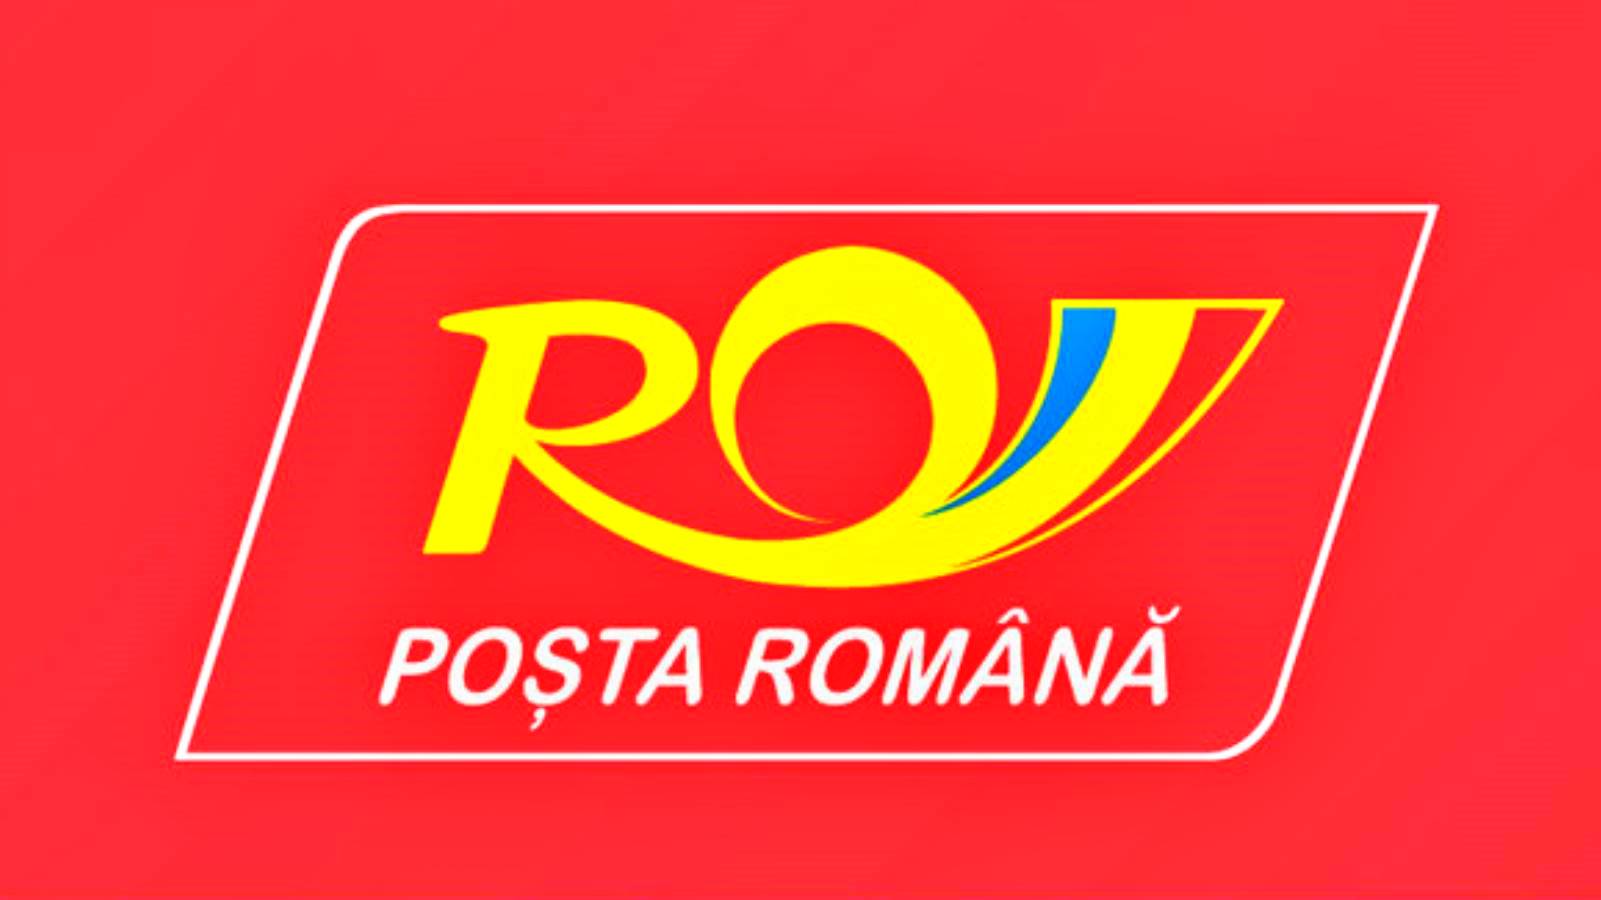 Roemeens postbericht voor Roemenen over voordelige prijzen voor verzendingen